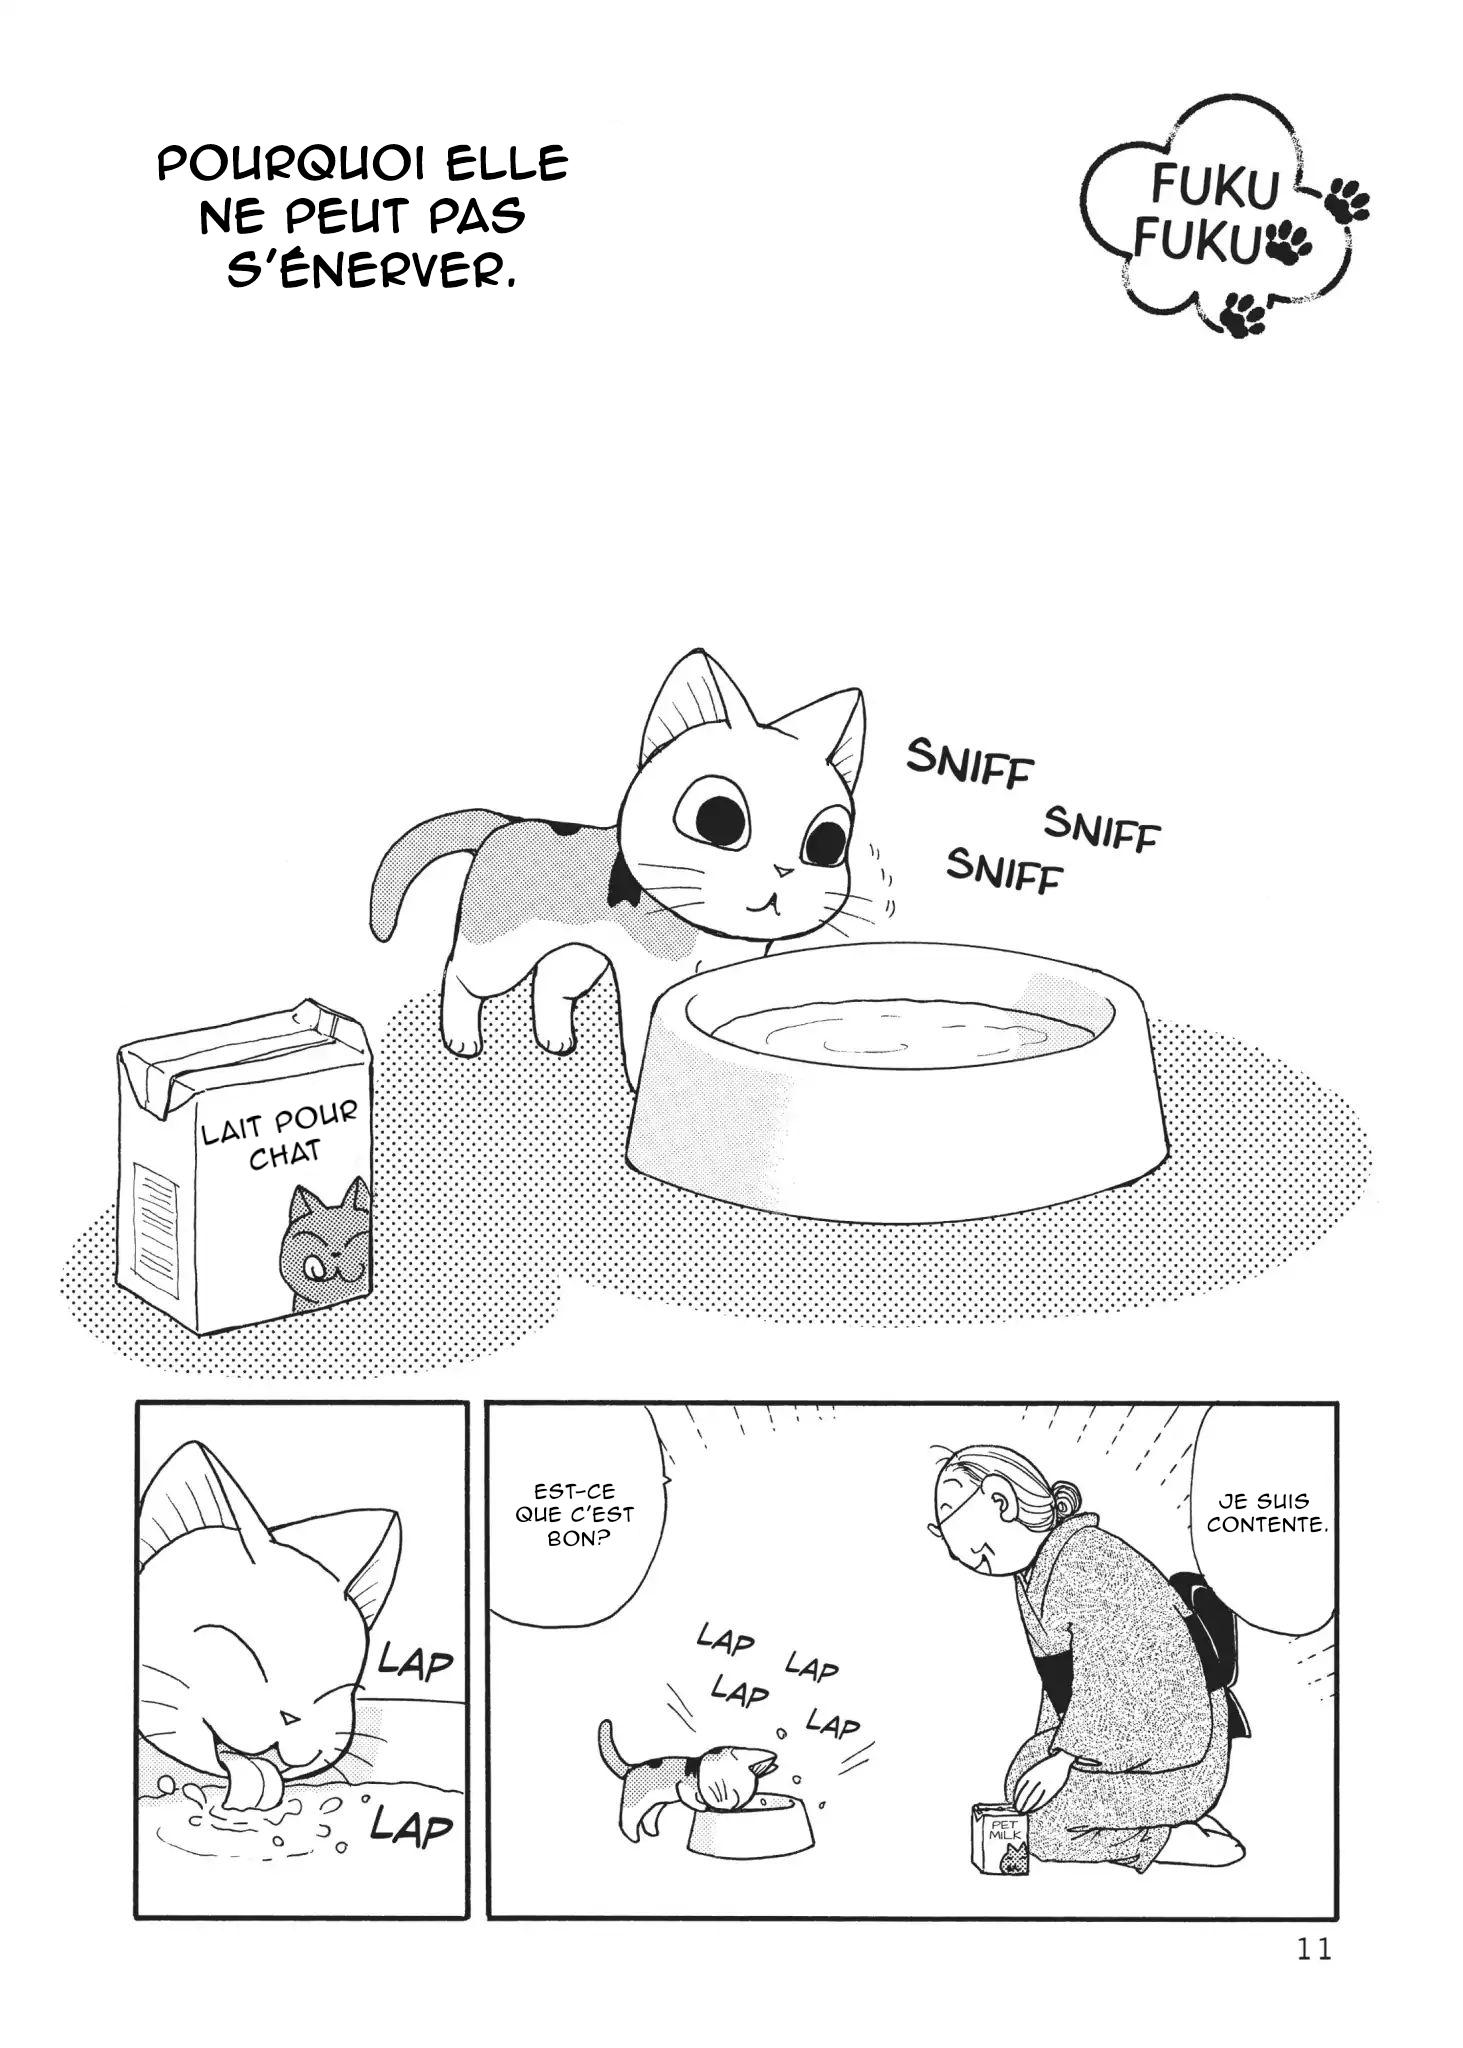 FukuFuku: Kitten Tales: Chapter 2 - Page 1